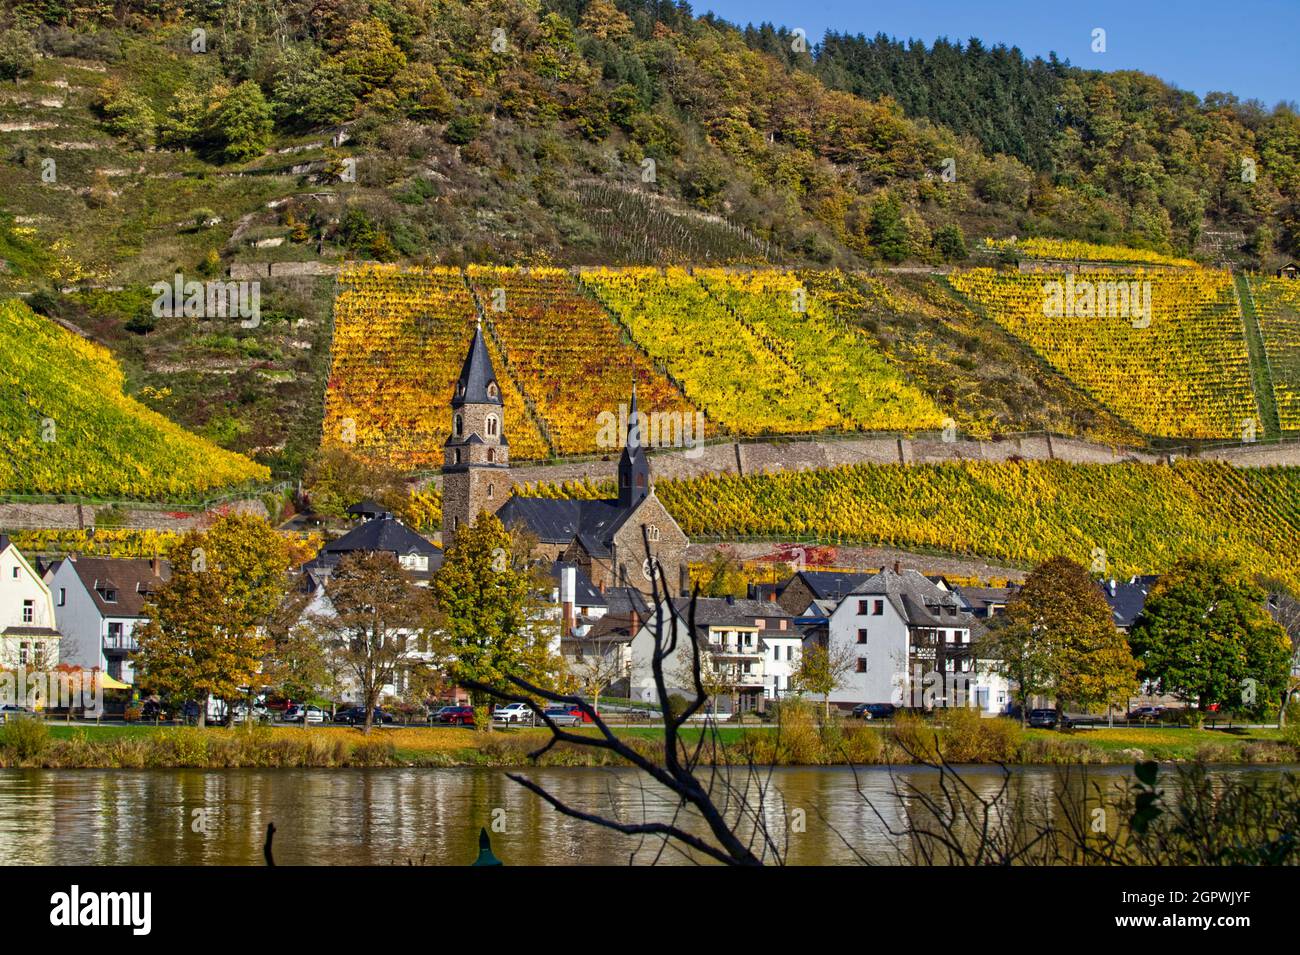 Ort Und Herbstliche Landschaft Spiegeln Sich In Mosel Stock Photo